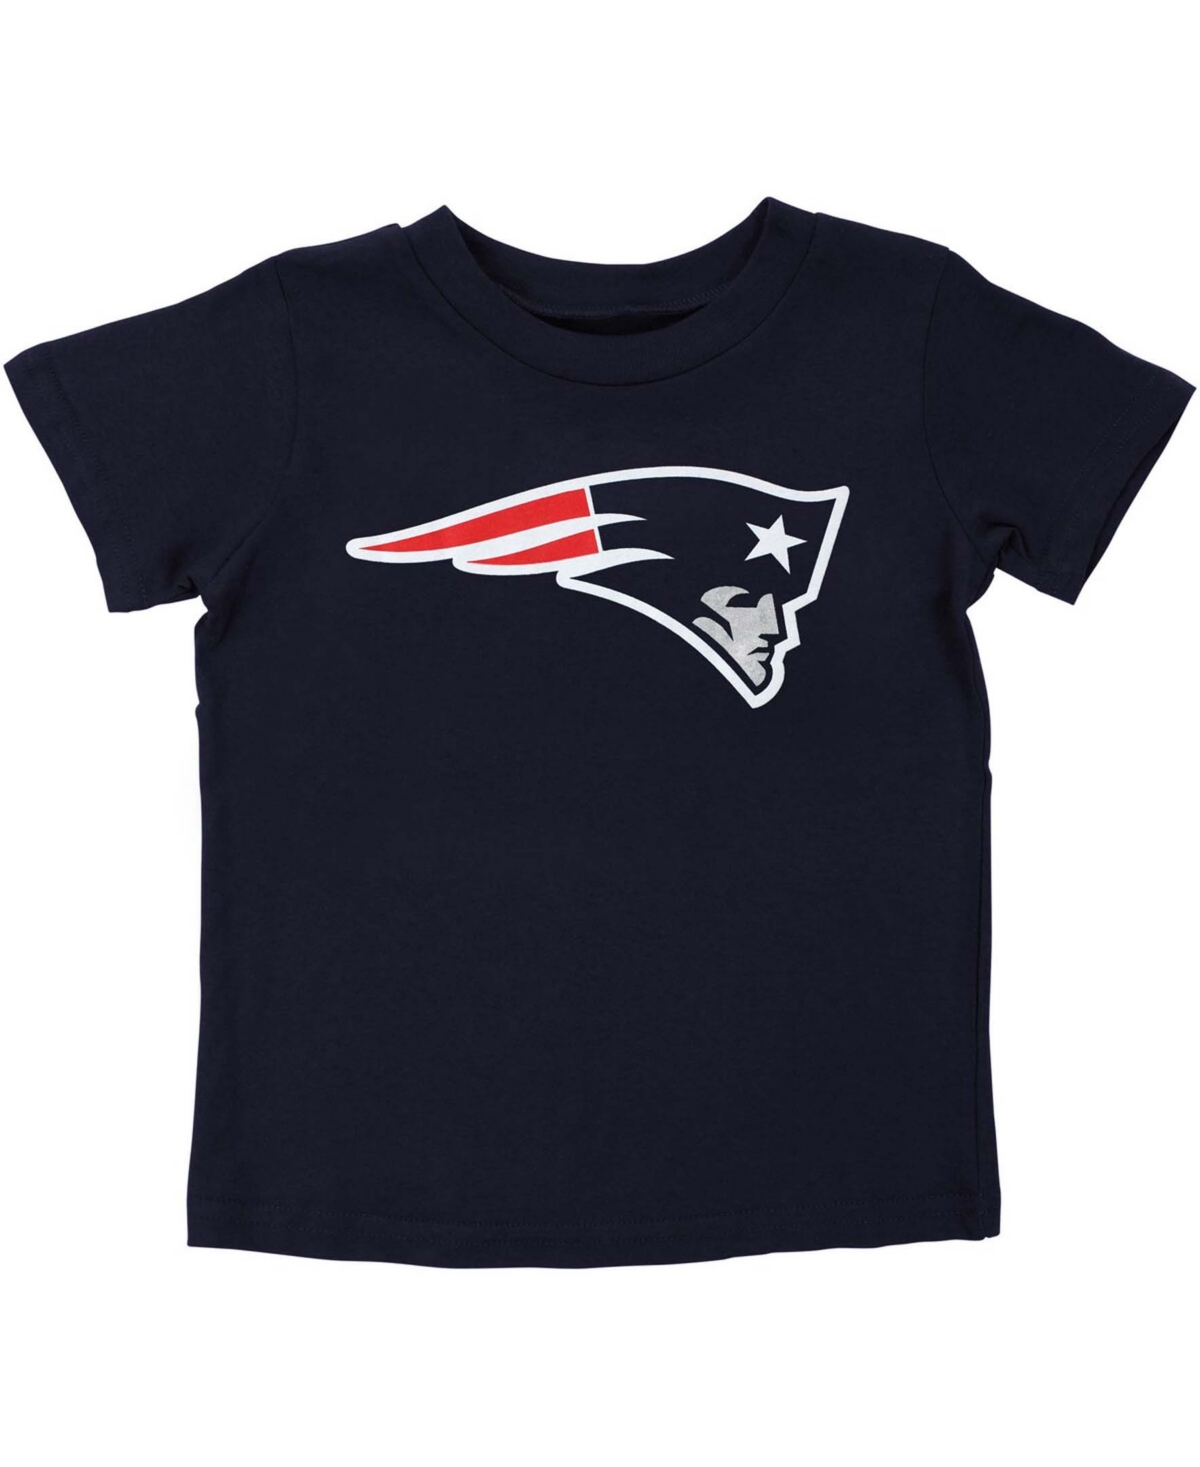 Shop Outerstuff Preschool Boys And Girls Navy Blue New England Patriots Team Logo T-shirt